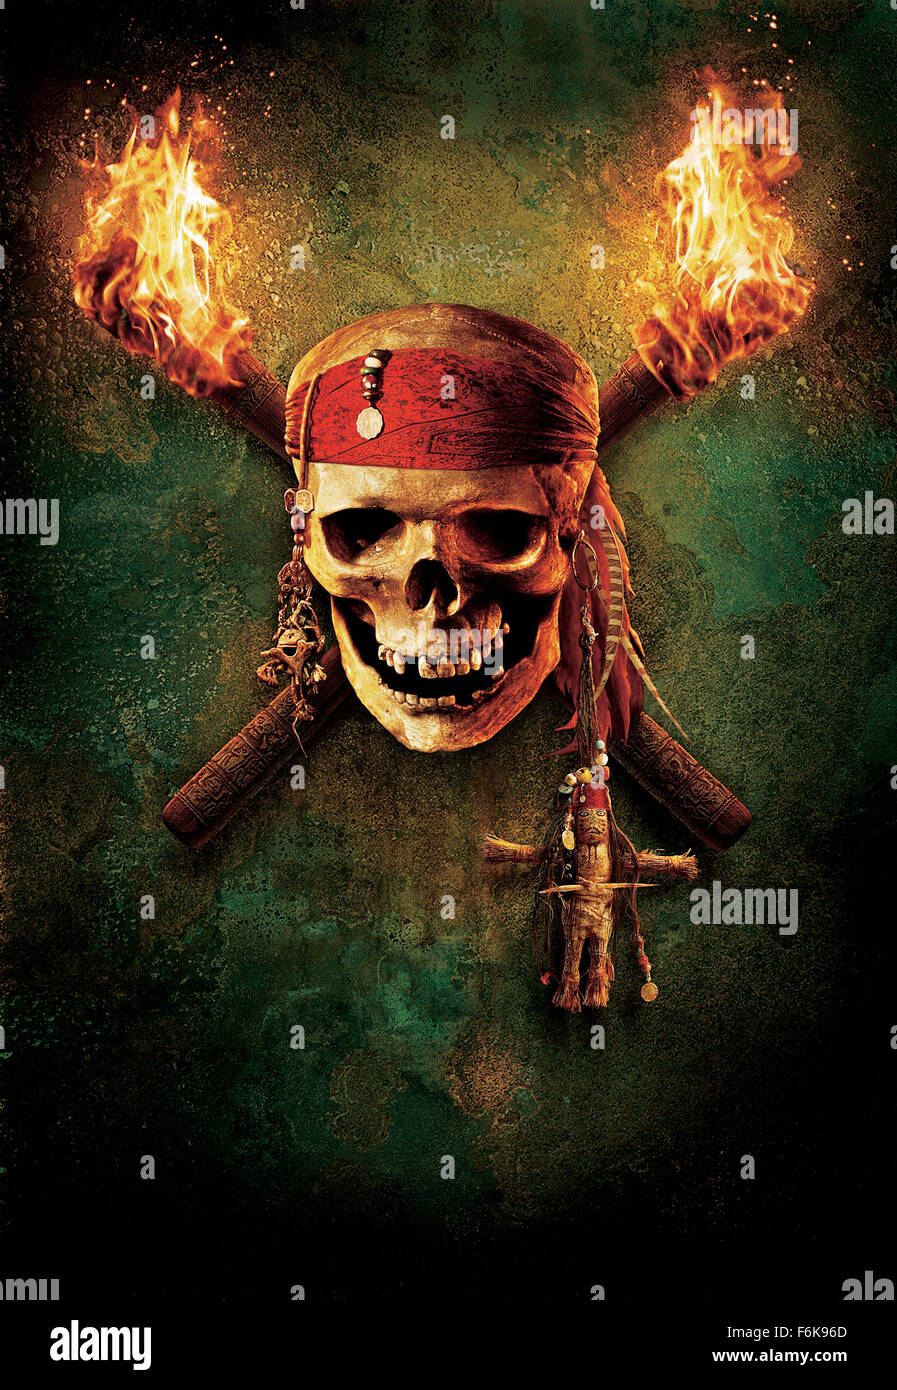 Piratas del Caribe: El cofre del hombre muerto - Película 2006 